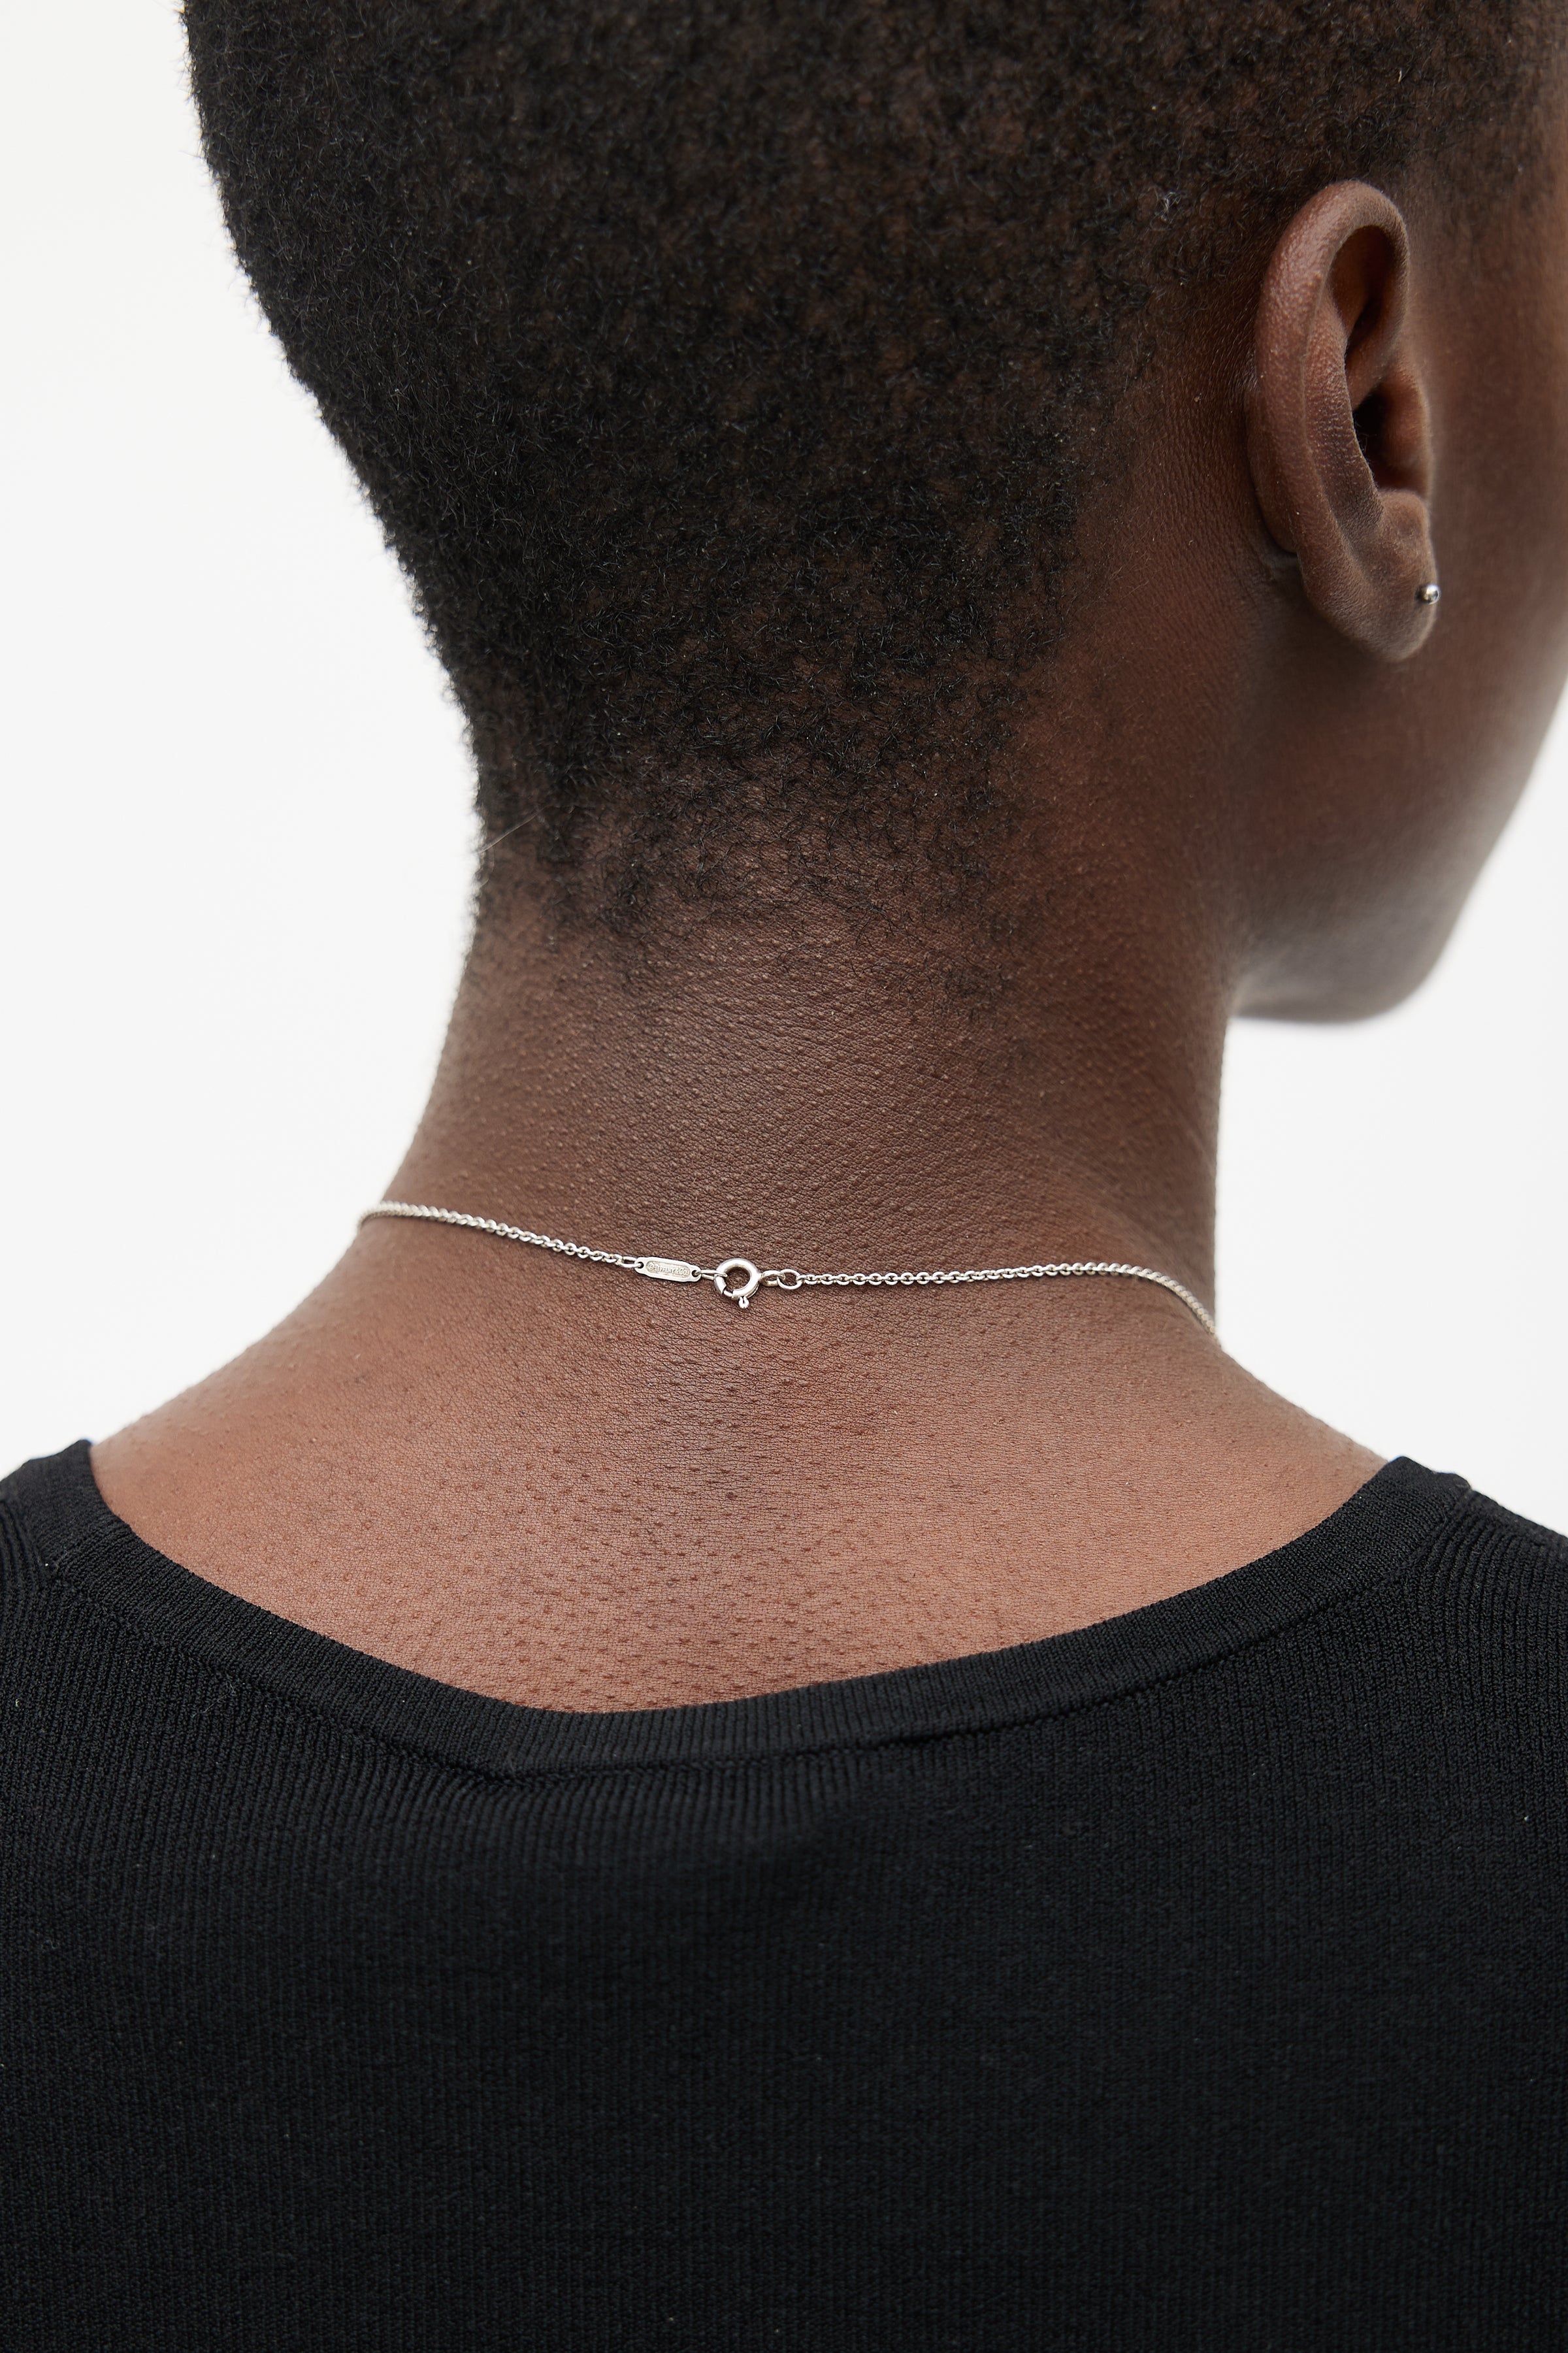 Elsa Peretti™ Open Heart pendant in sterling silver with a diamond. |  Tiffany & Co.